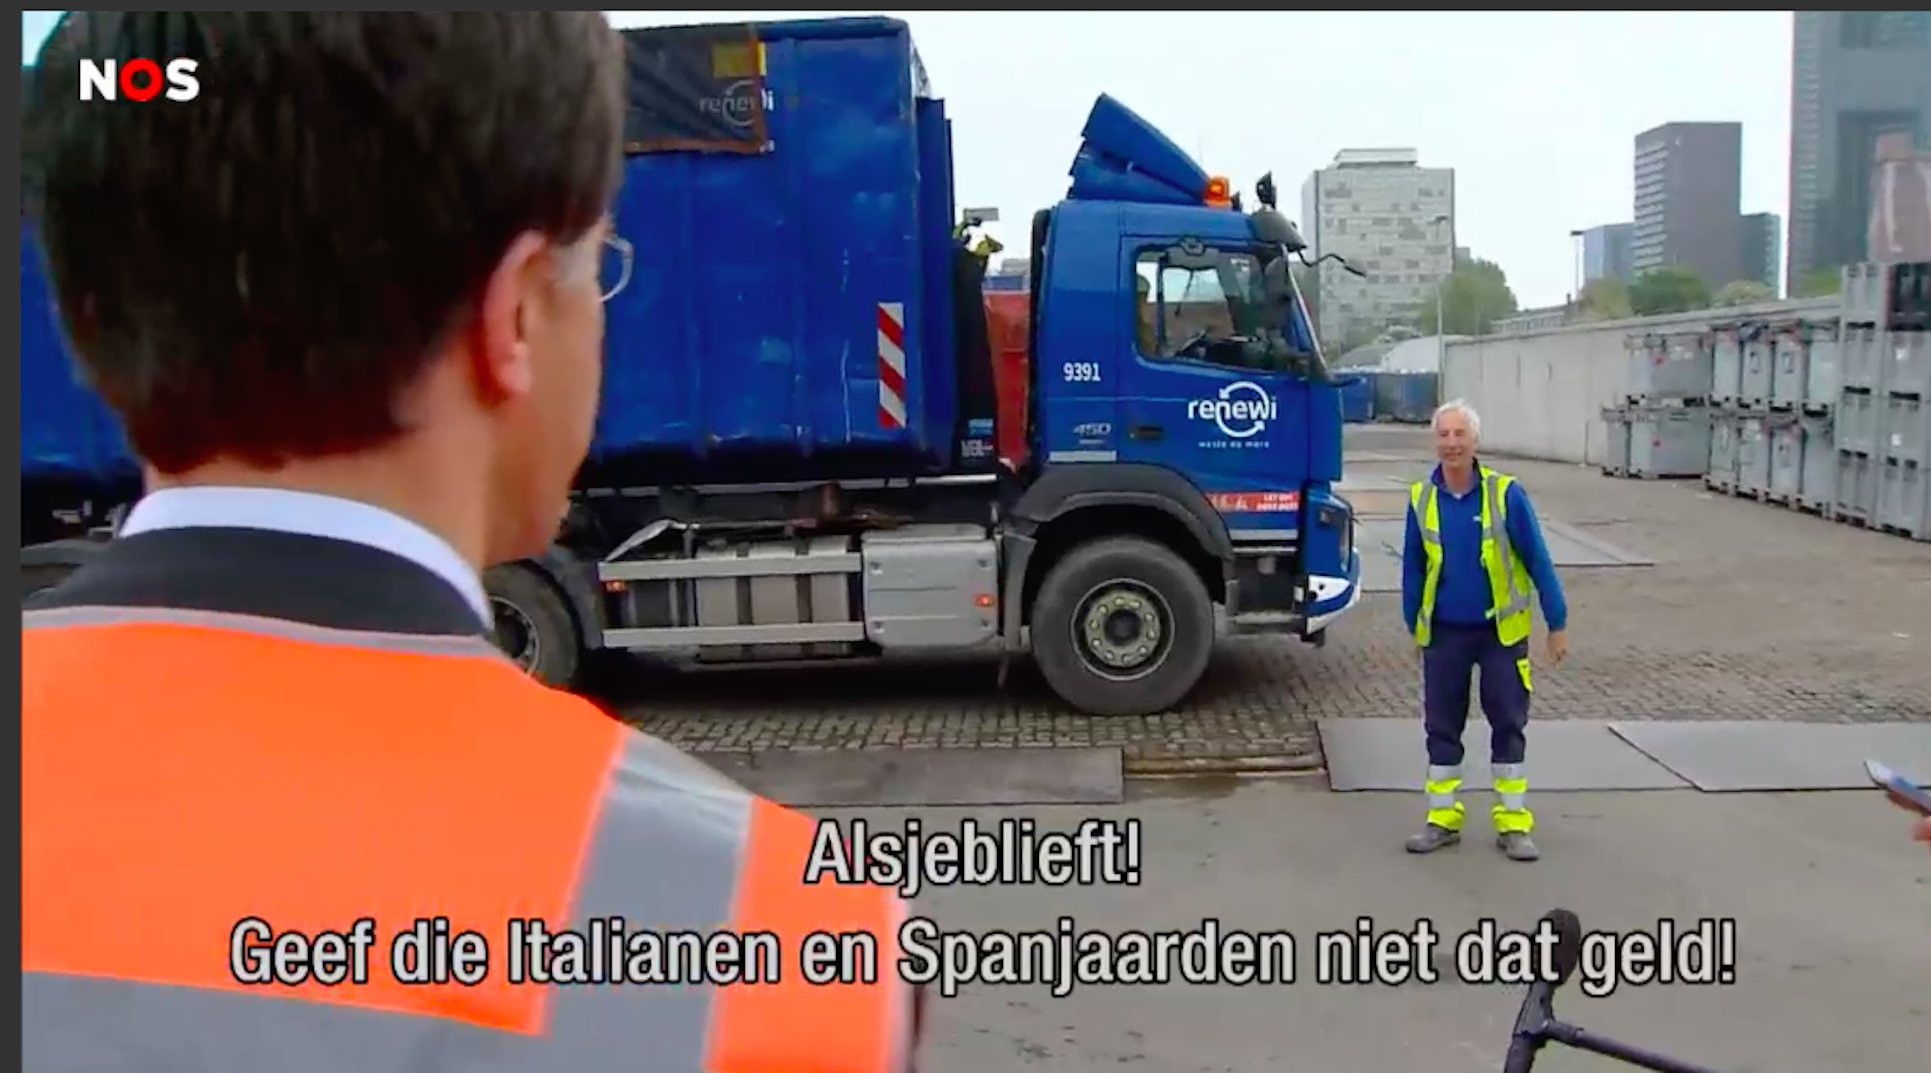 Un treballador holandès, al primer ministre: "No doneu diners als espanyols!"